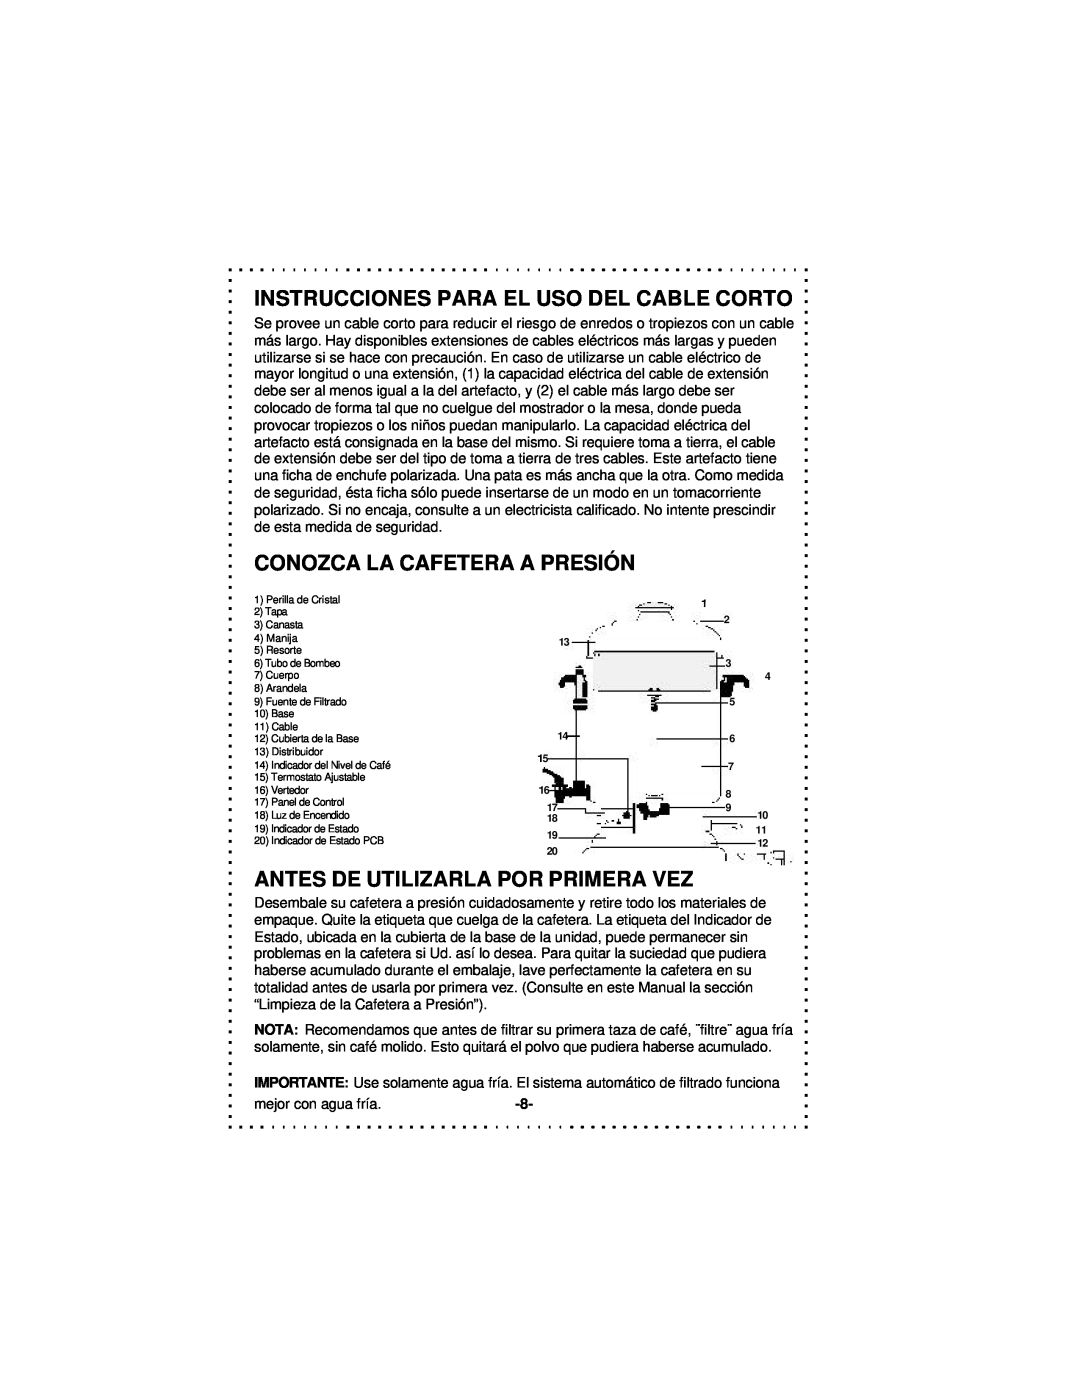 DeLonghi DCU50T Series instruction manual Instrucciones Para El Uso Del Cable Corto, Conozca La Cafetera A Presión 